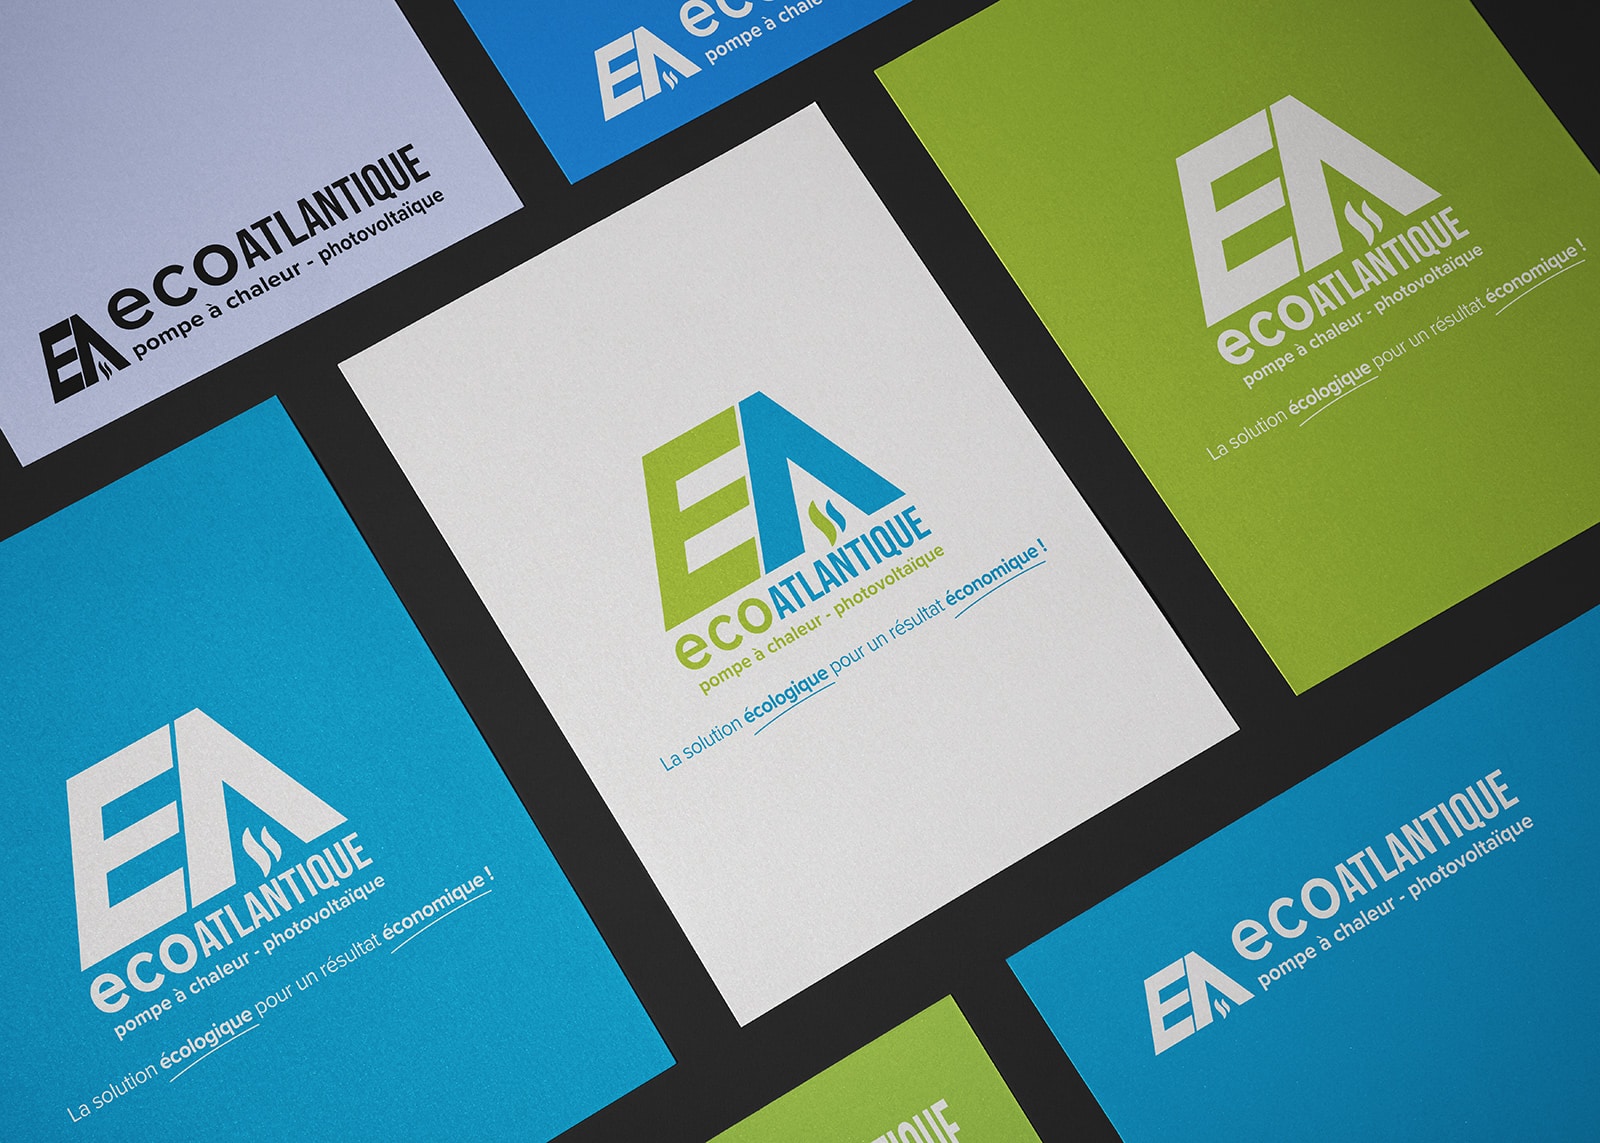 Nouveau logo pour les 10 ans d’Eco Atlantique